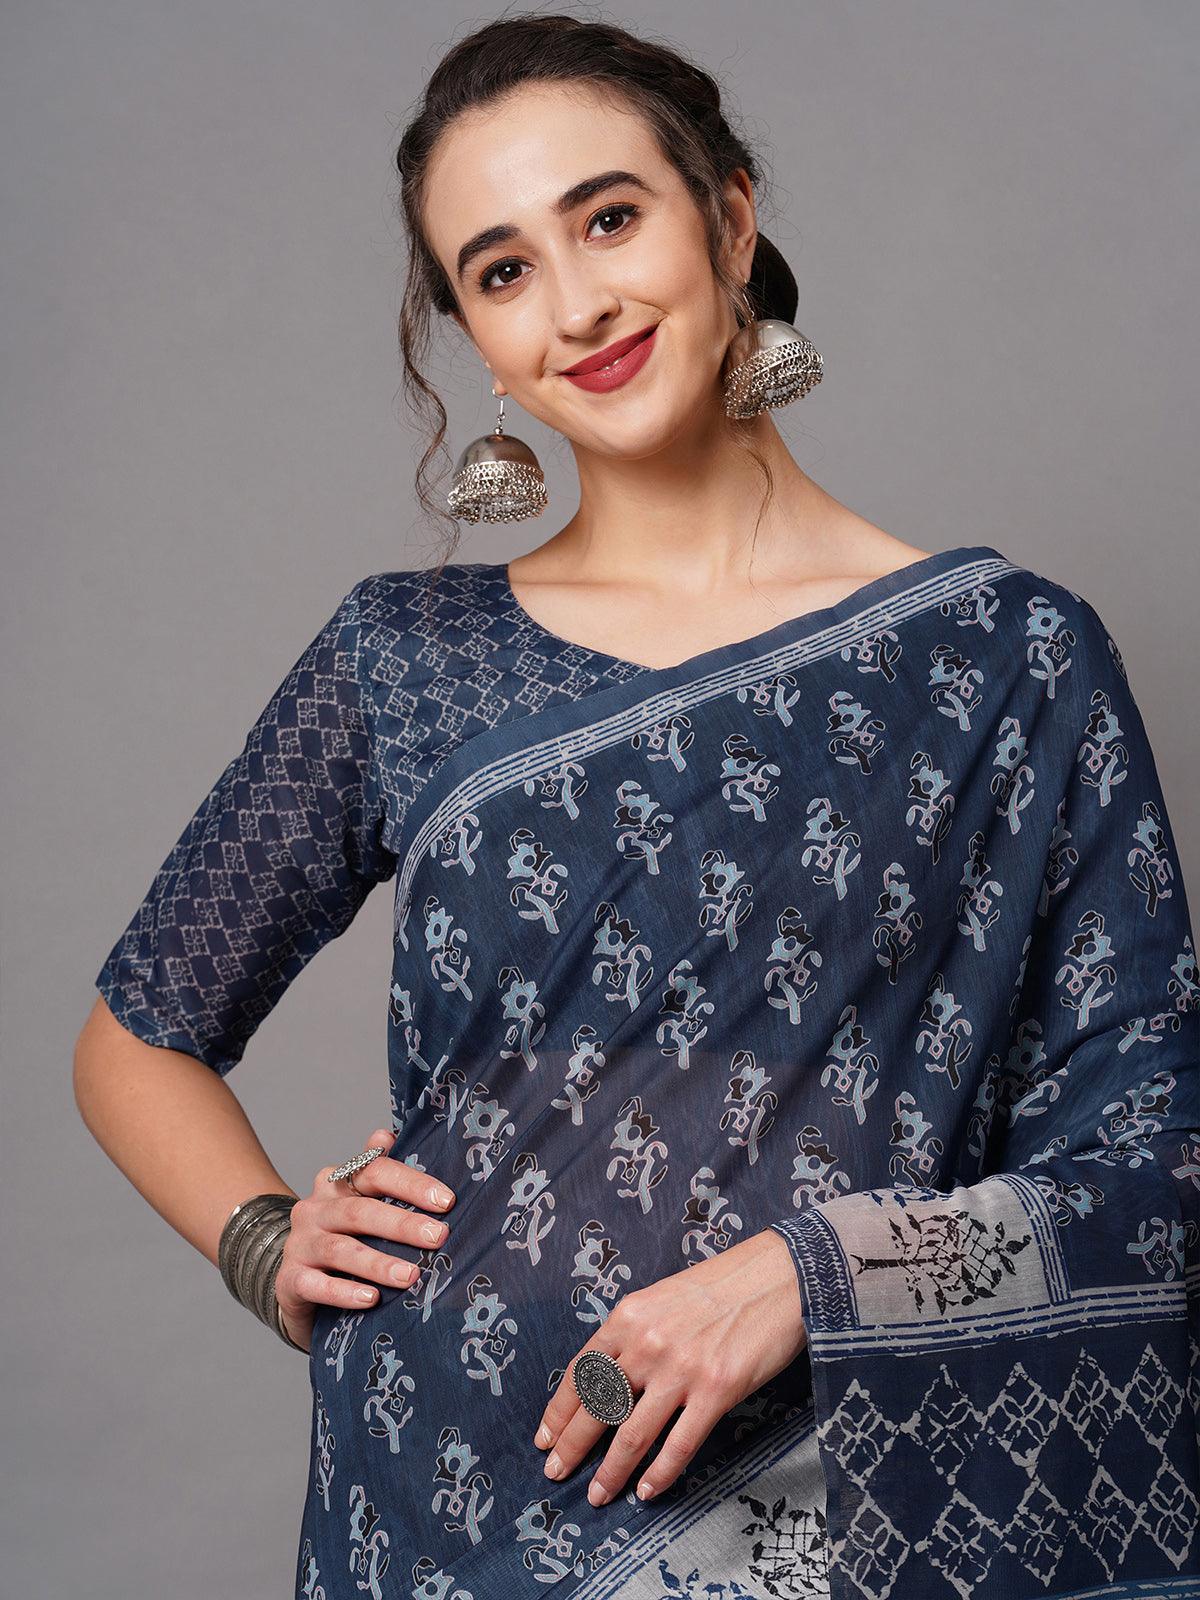 Women's Navy Blue Festive Bhagalpuri Silk Printed Saree With Unstitched Blouse - Odette